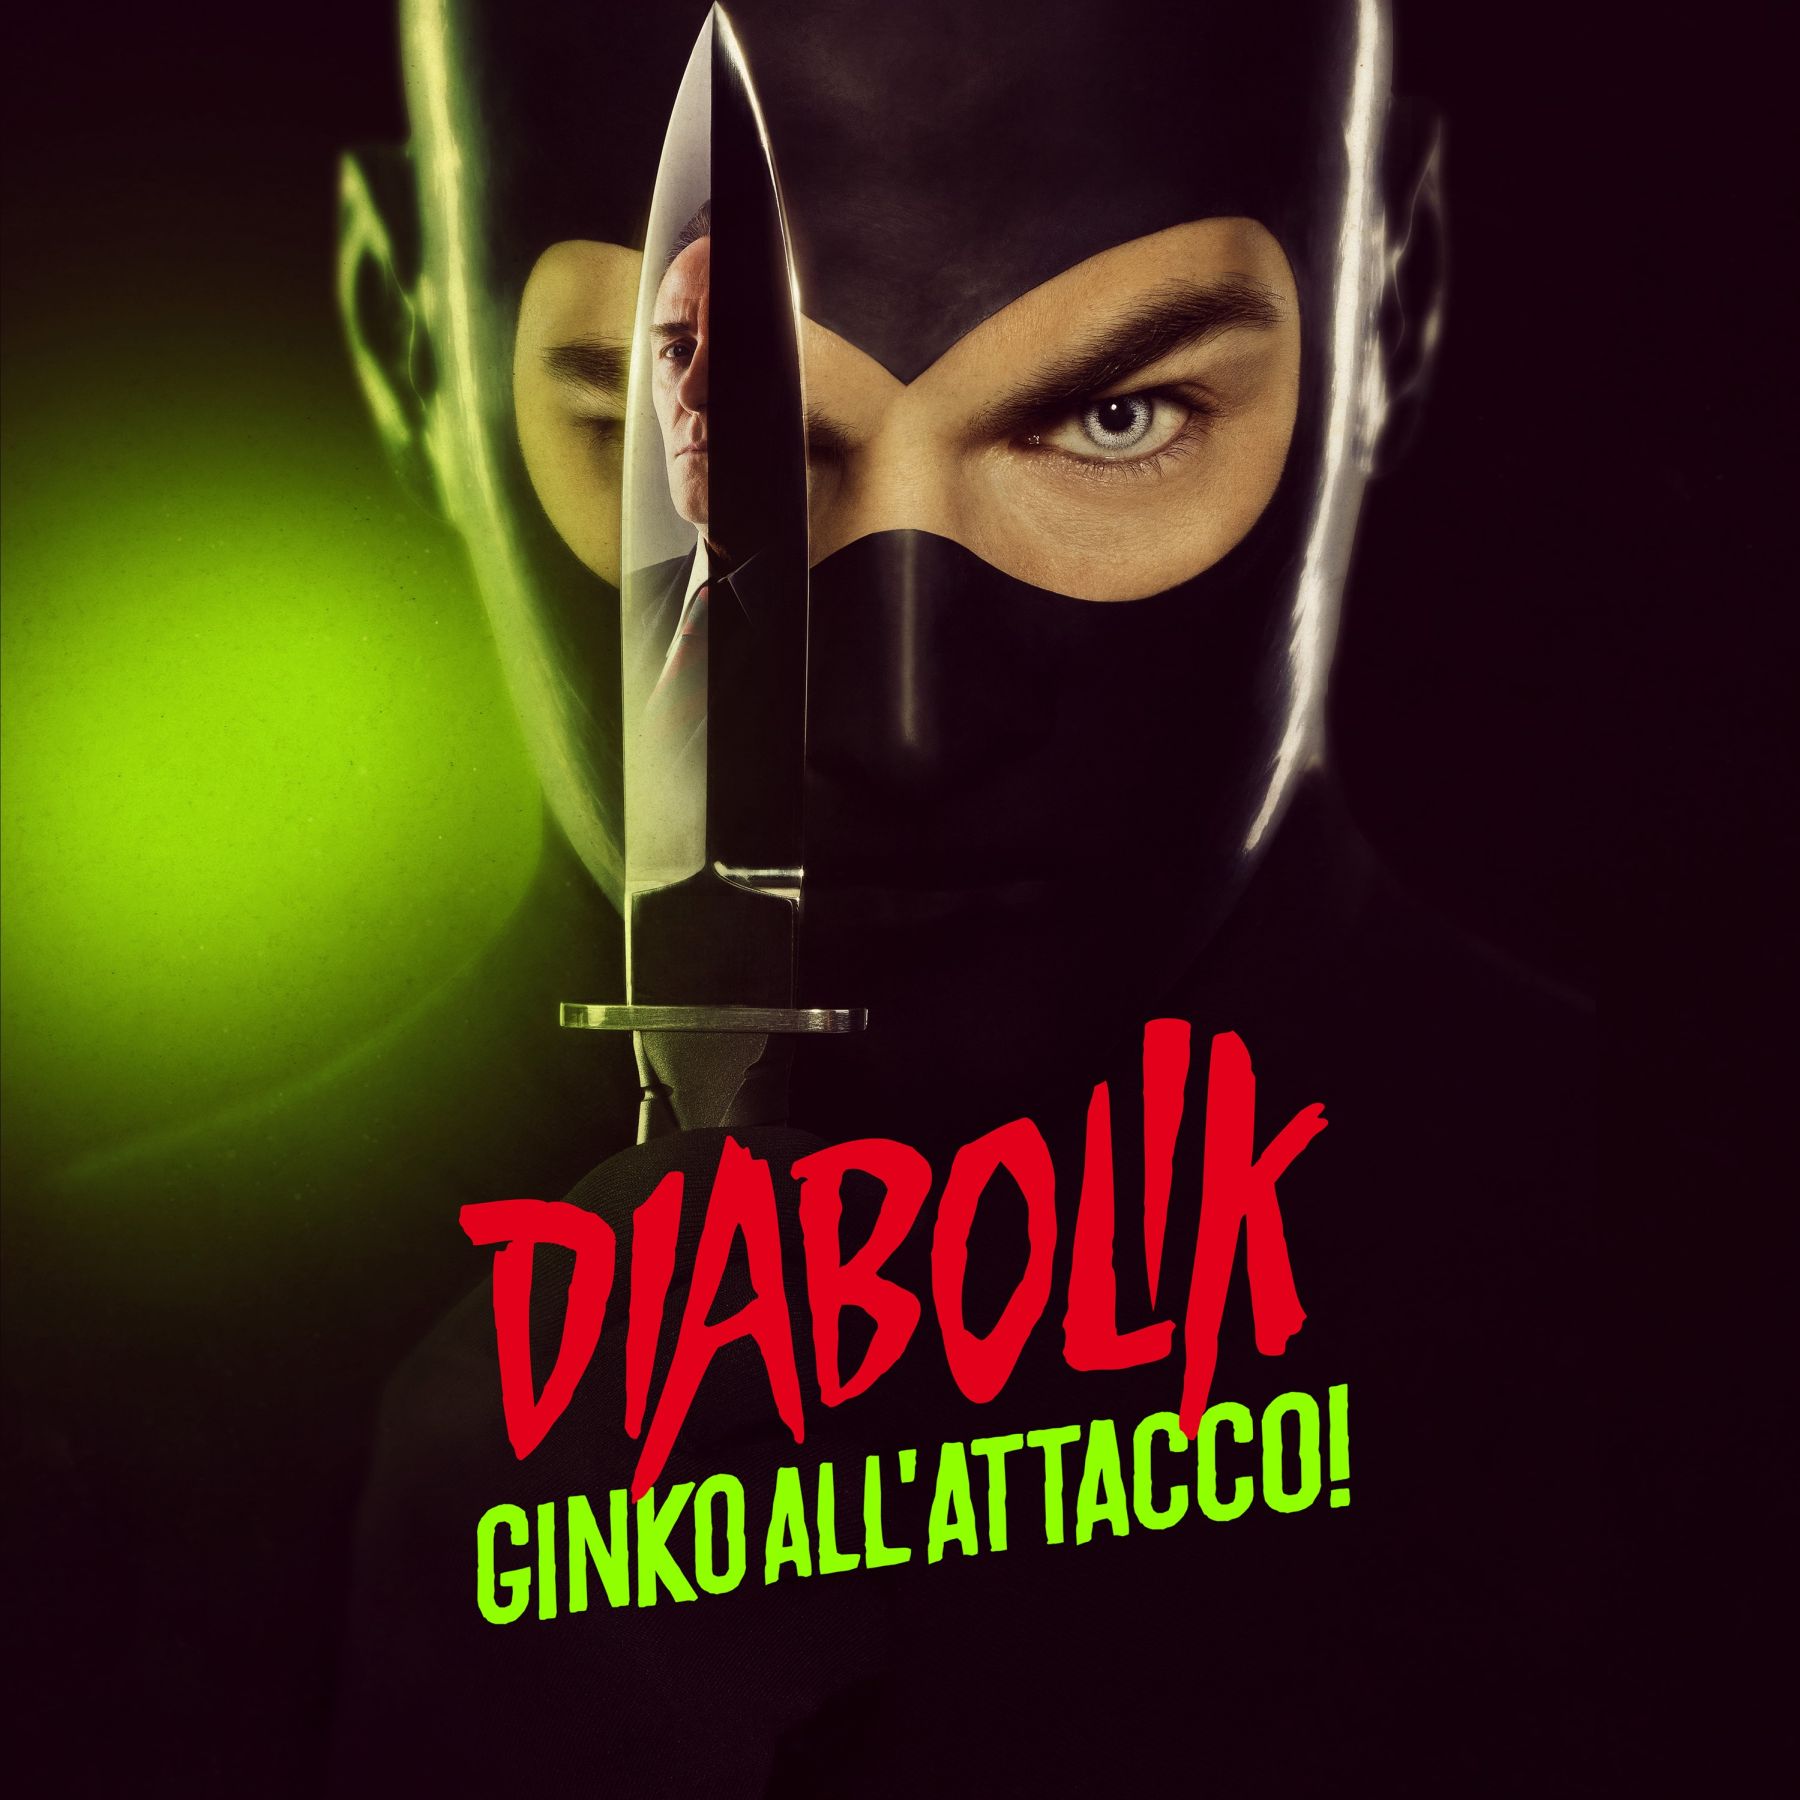 Dal 5 dicembre disponibile il vinile della colonna sonora di Diabolik